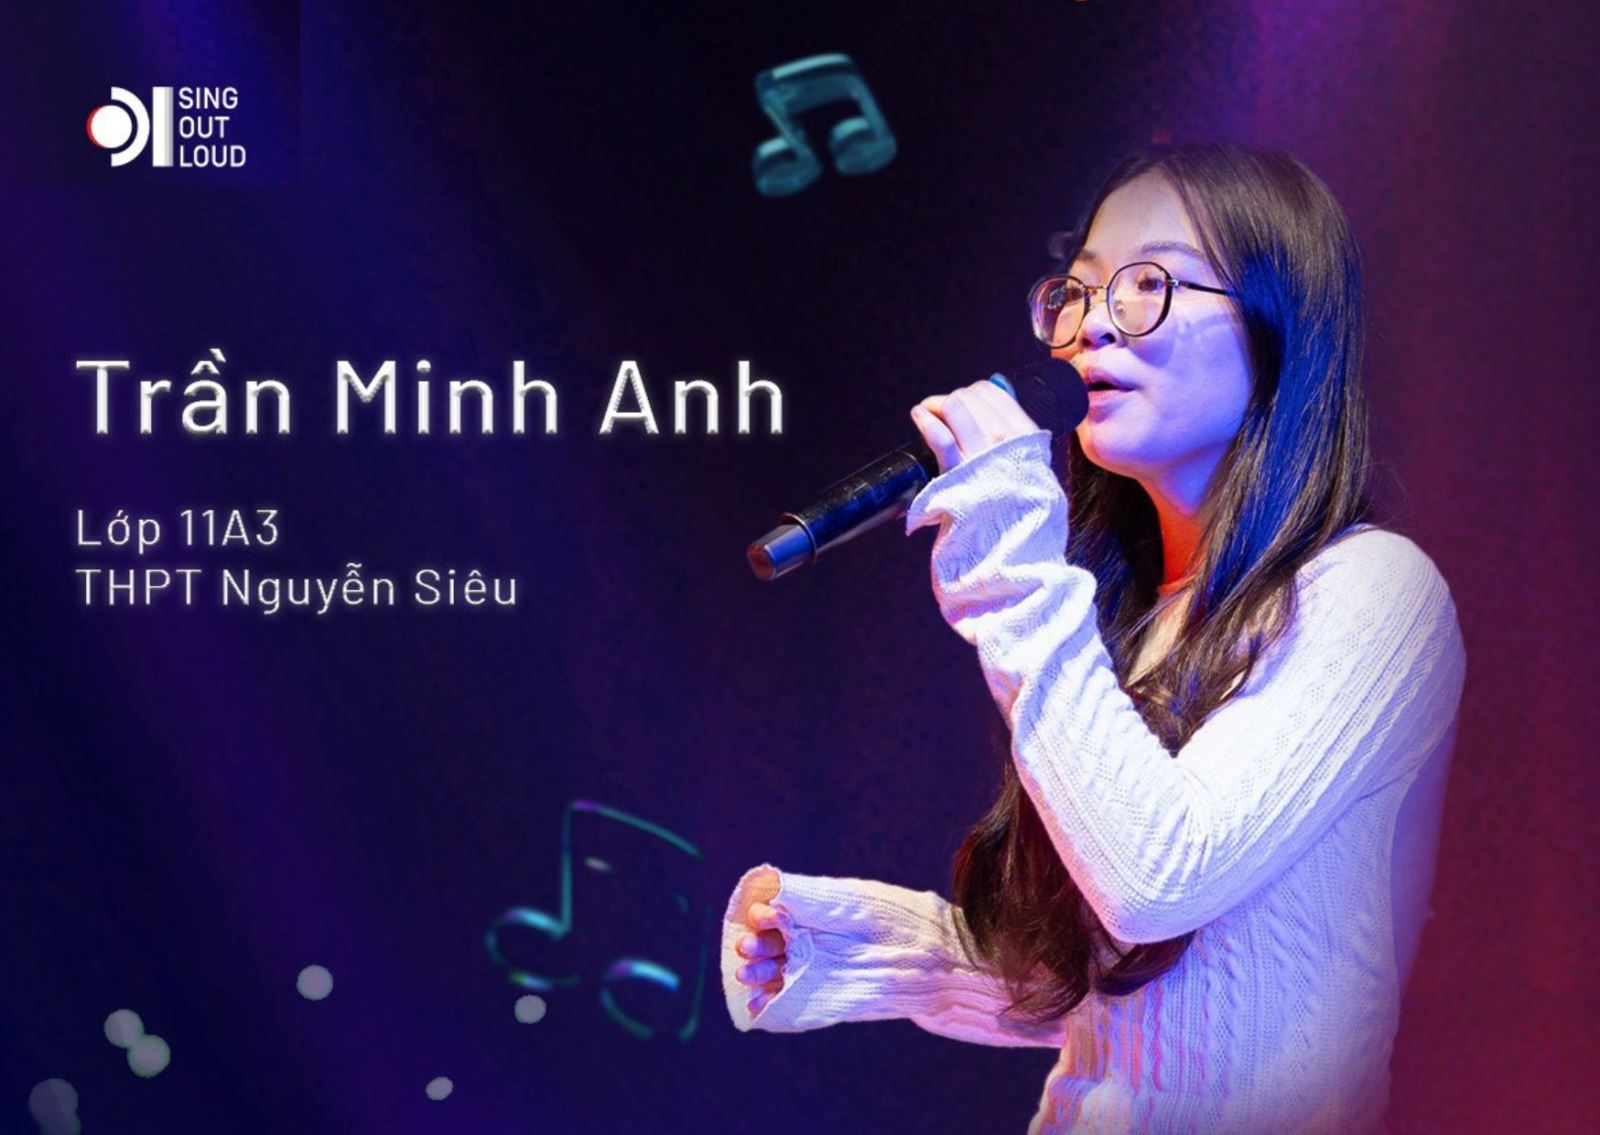 NS-er MINH ANH VÀO VÒNG CHUNG KẾT MIỀN BẮC "SING OUT LOUD" 2024